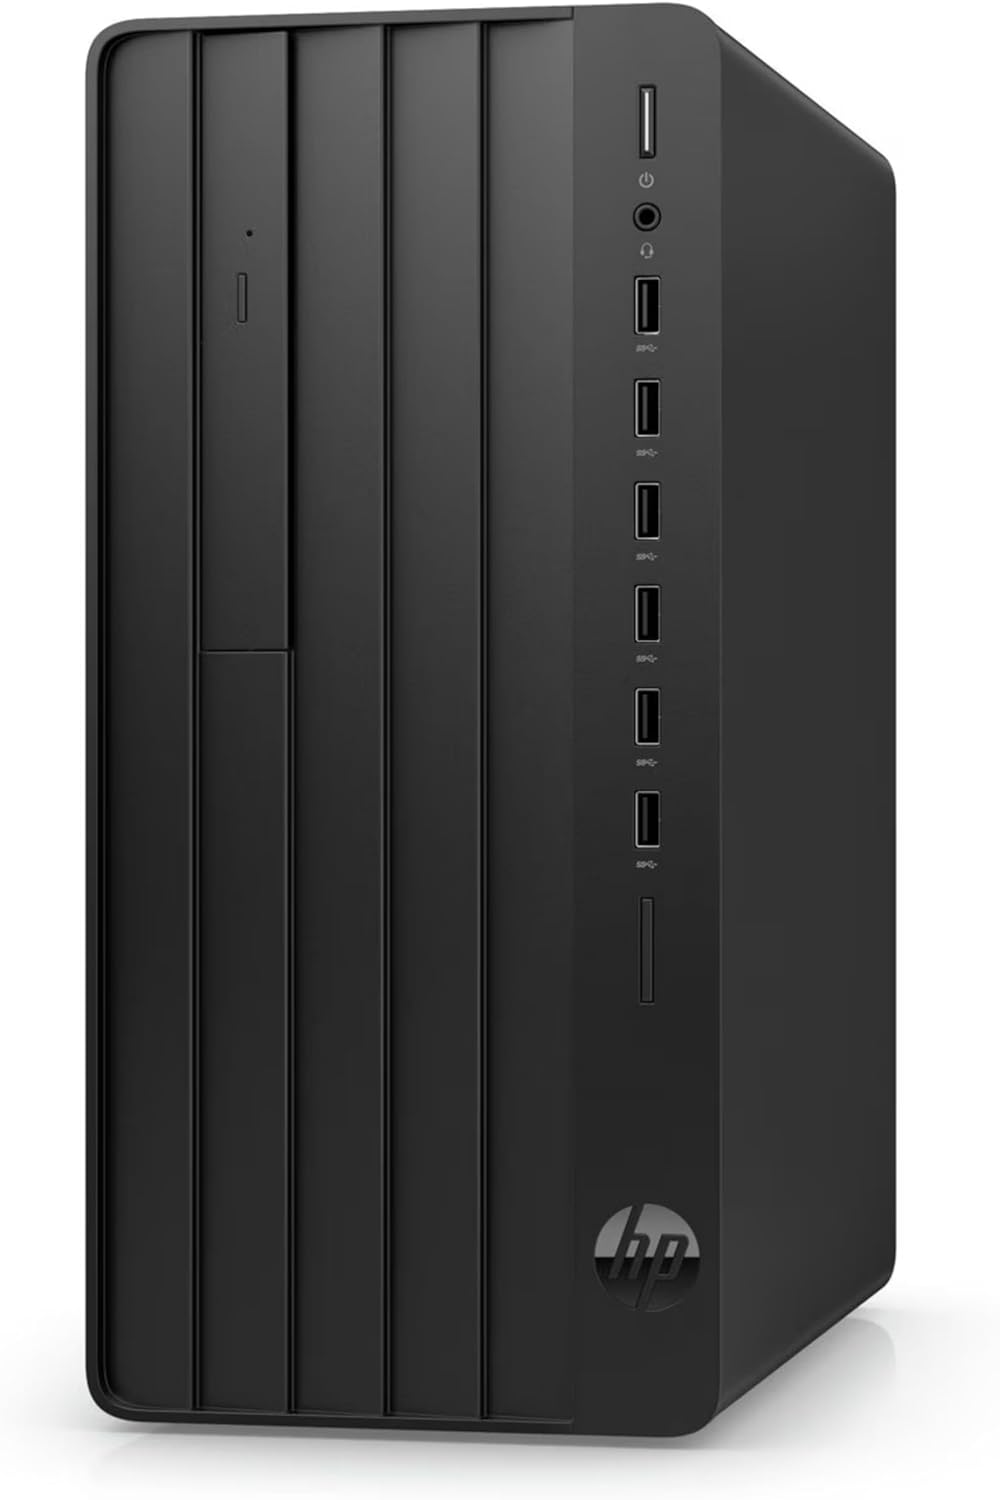 HP Pro Tower 290 G9 Desktop PC - Intel i3-12100, 8GB RAM, 1TB HDD + 256GB SSD - Windows 11 Pro - Black 0197029250551